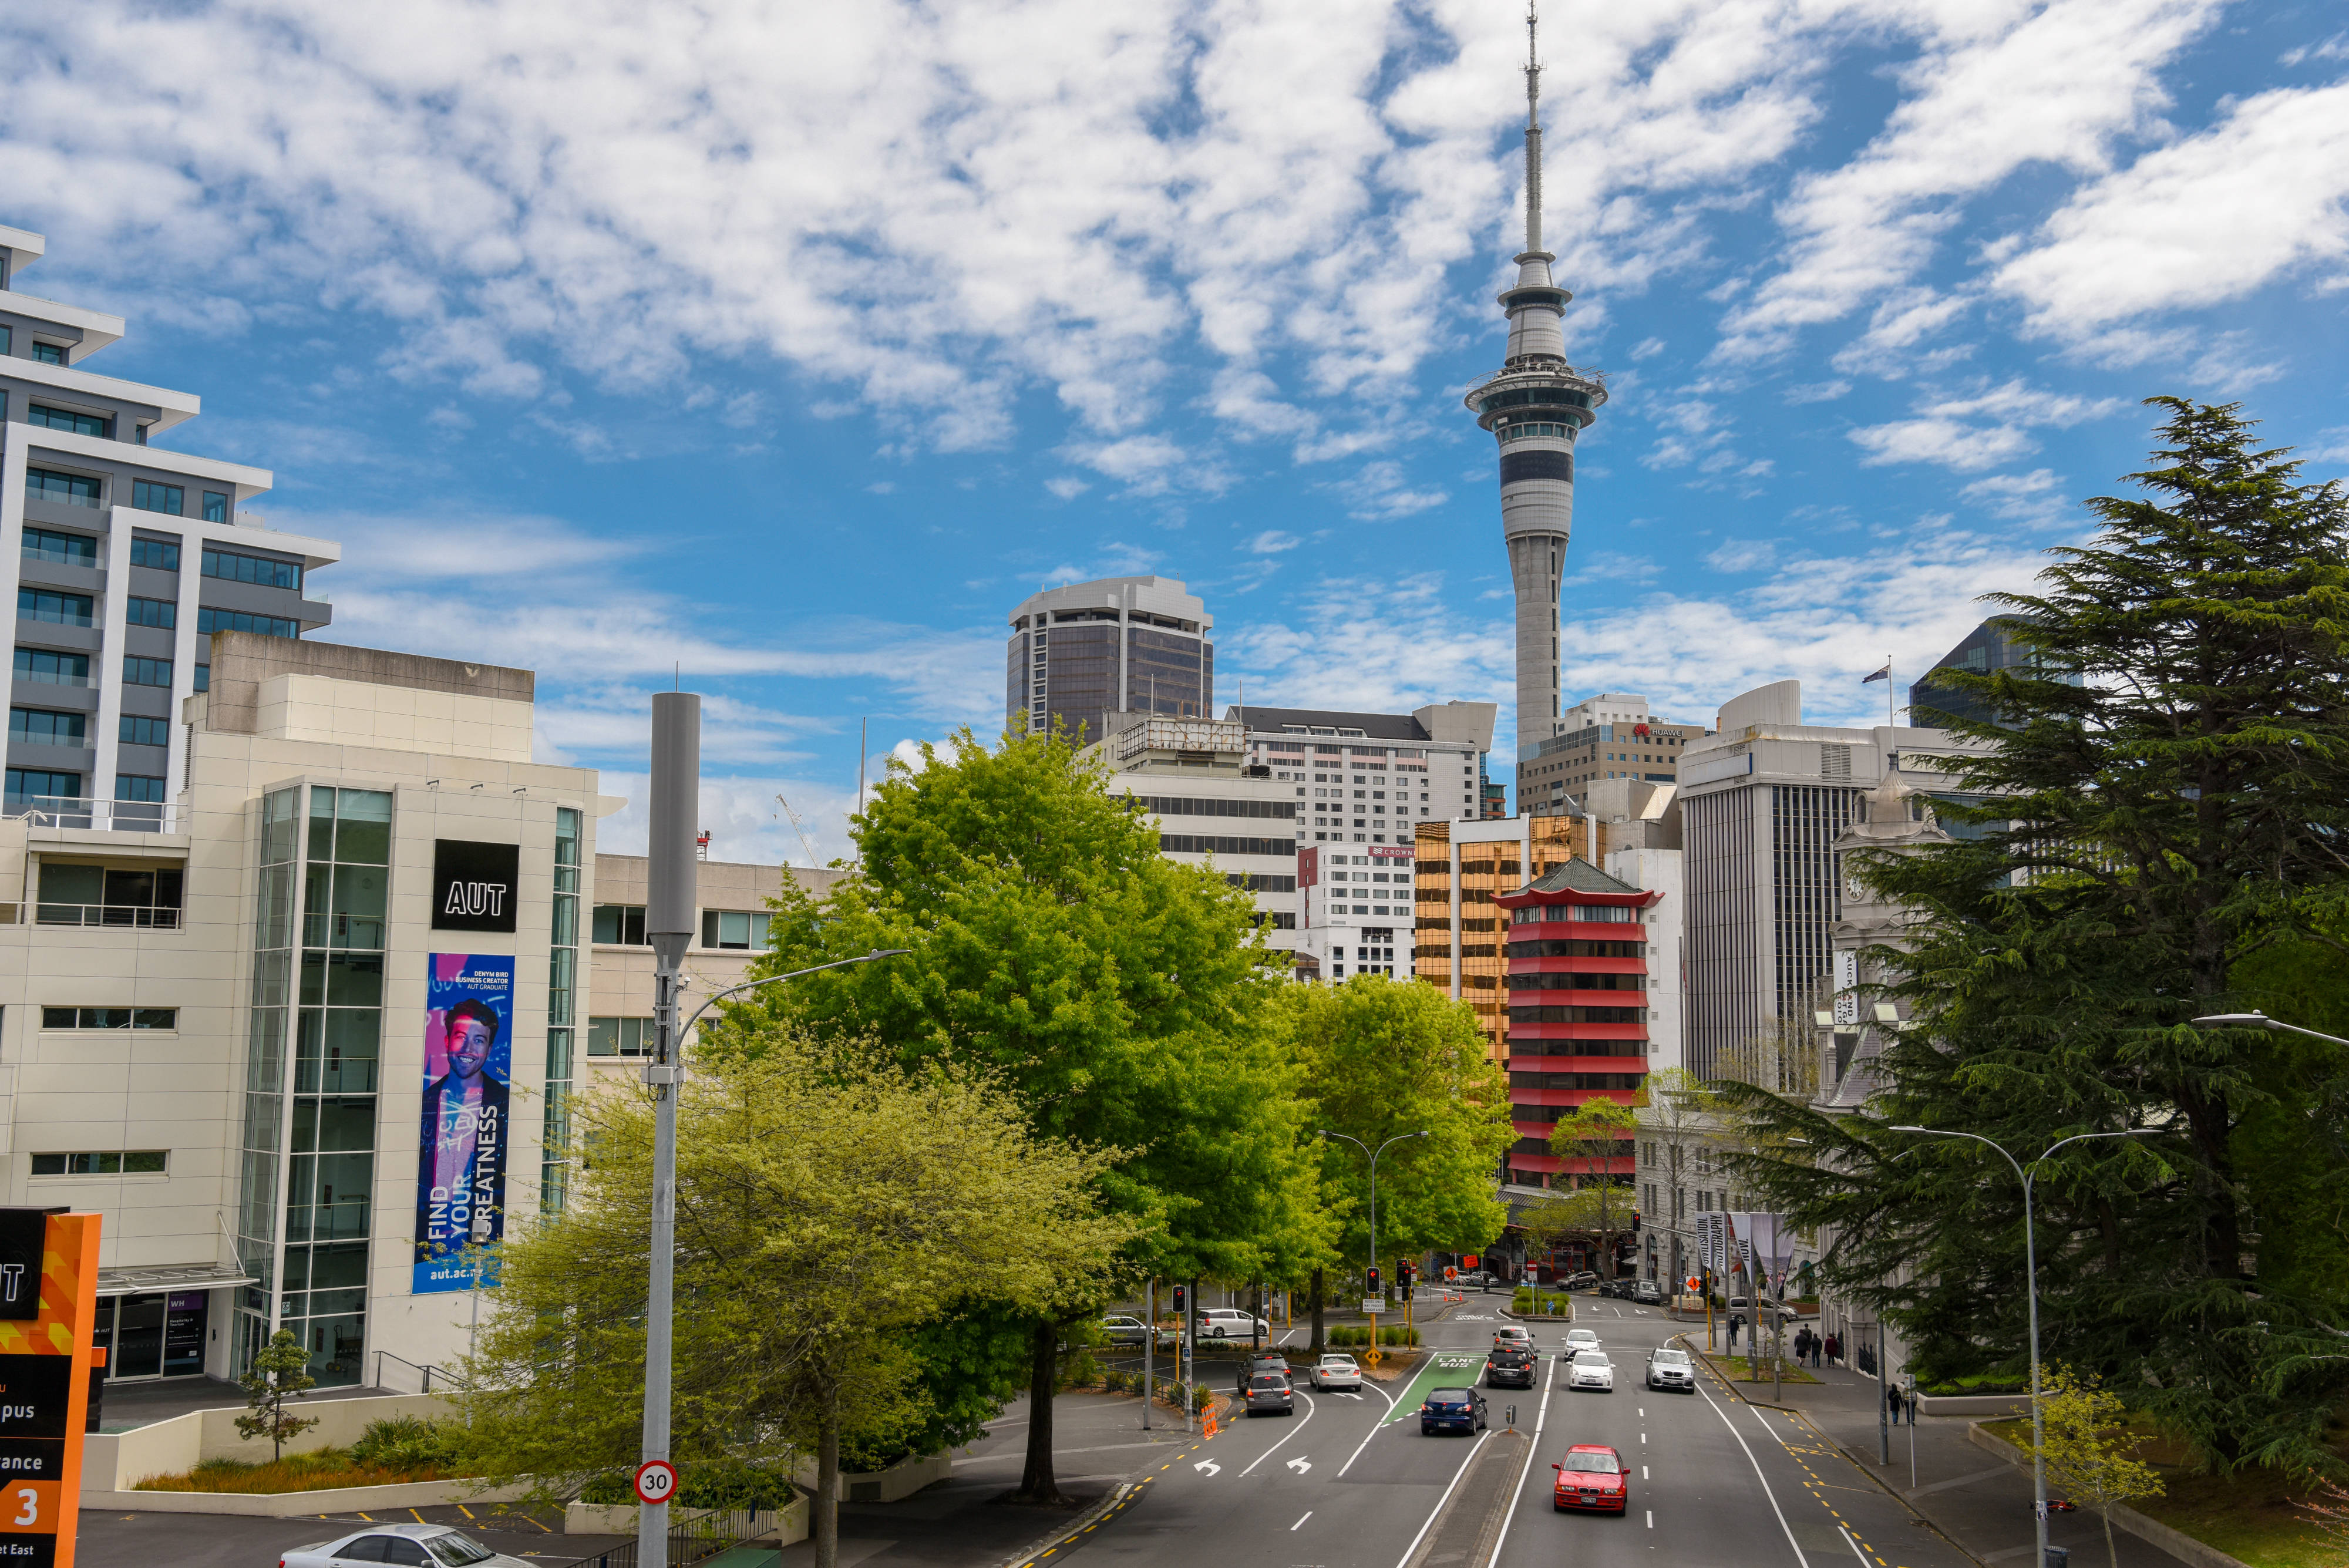 这是新西兰最大城市奥克兰街景(10月10日摄).